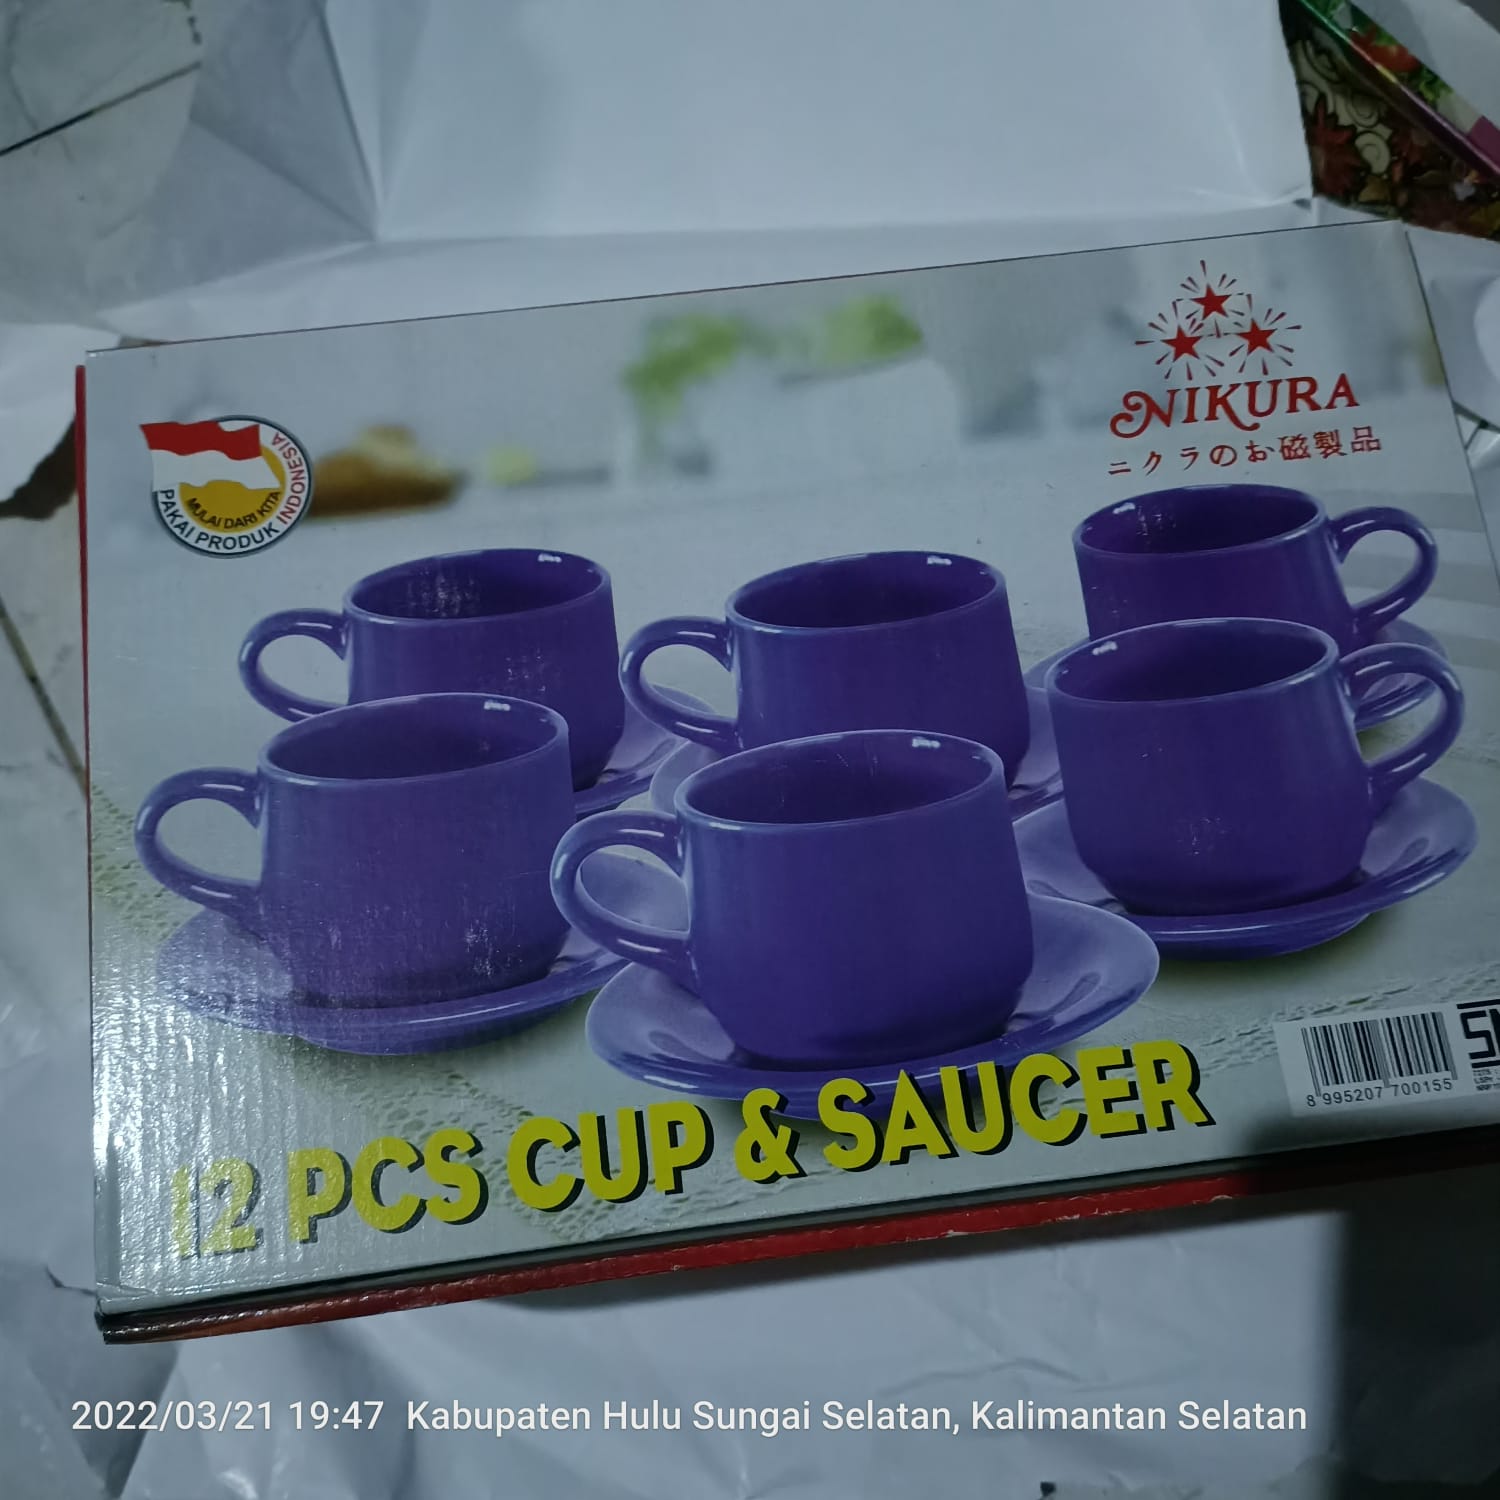 Cup & Saucer